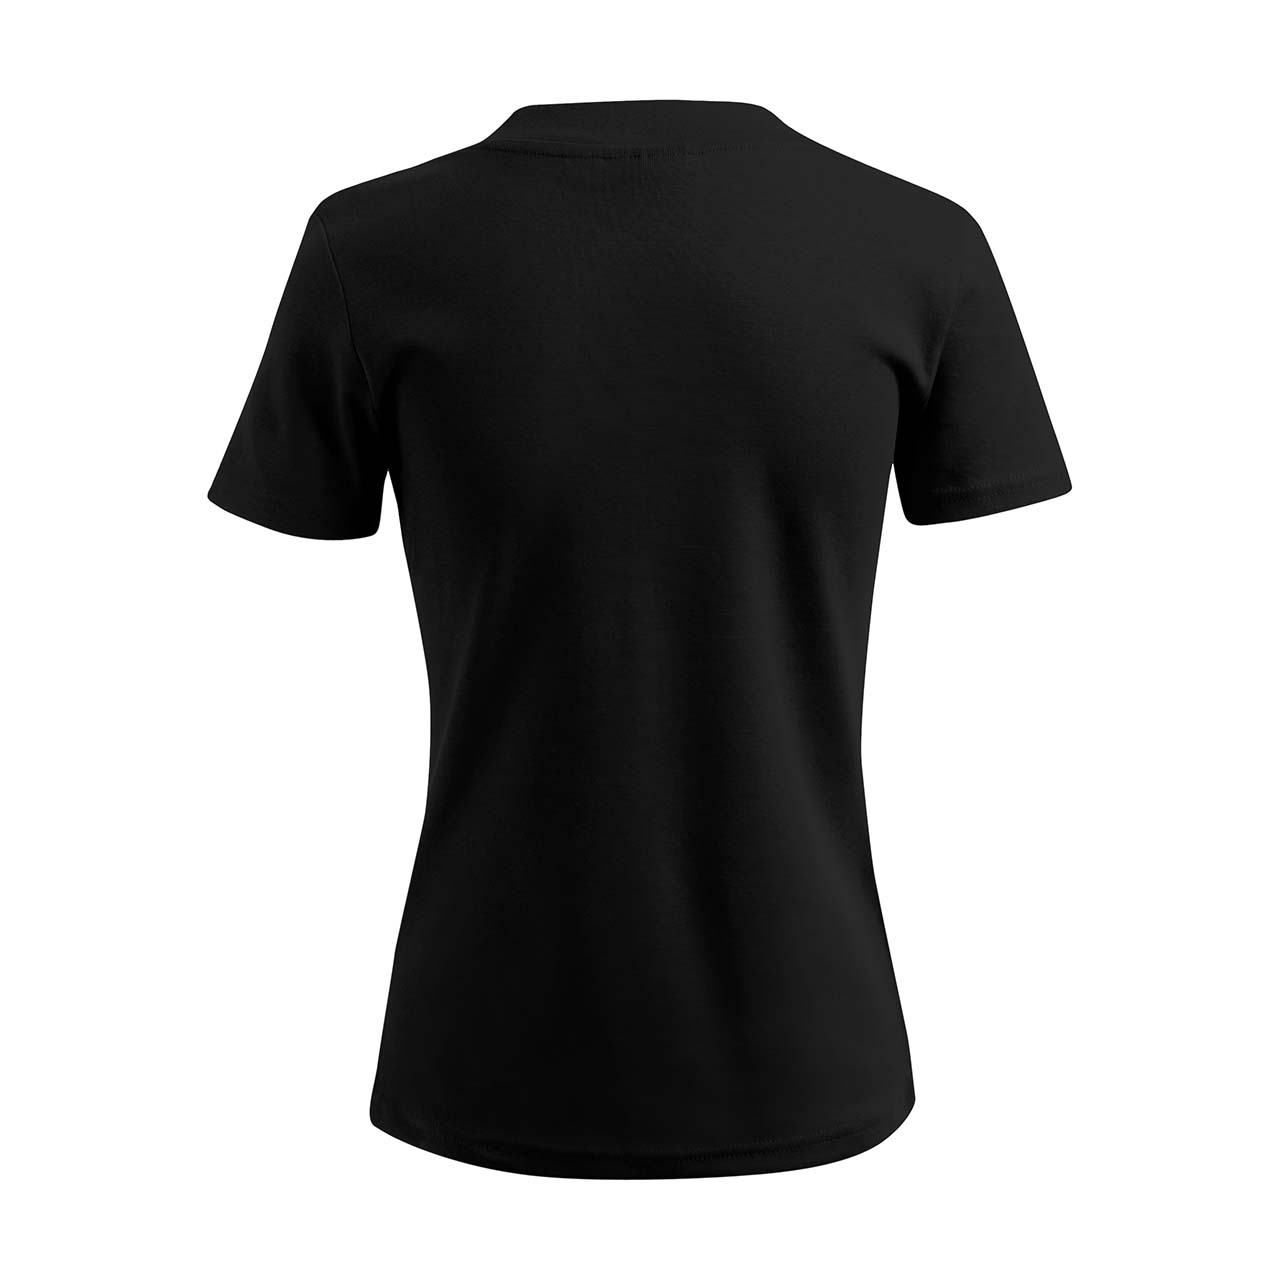 Damen T-Shirt mit V-Ausschnitt - Malle - Strass